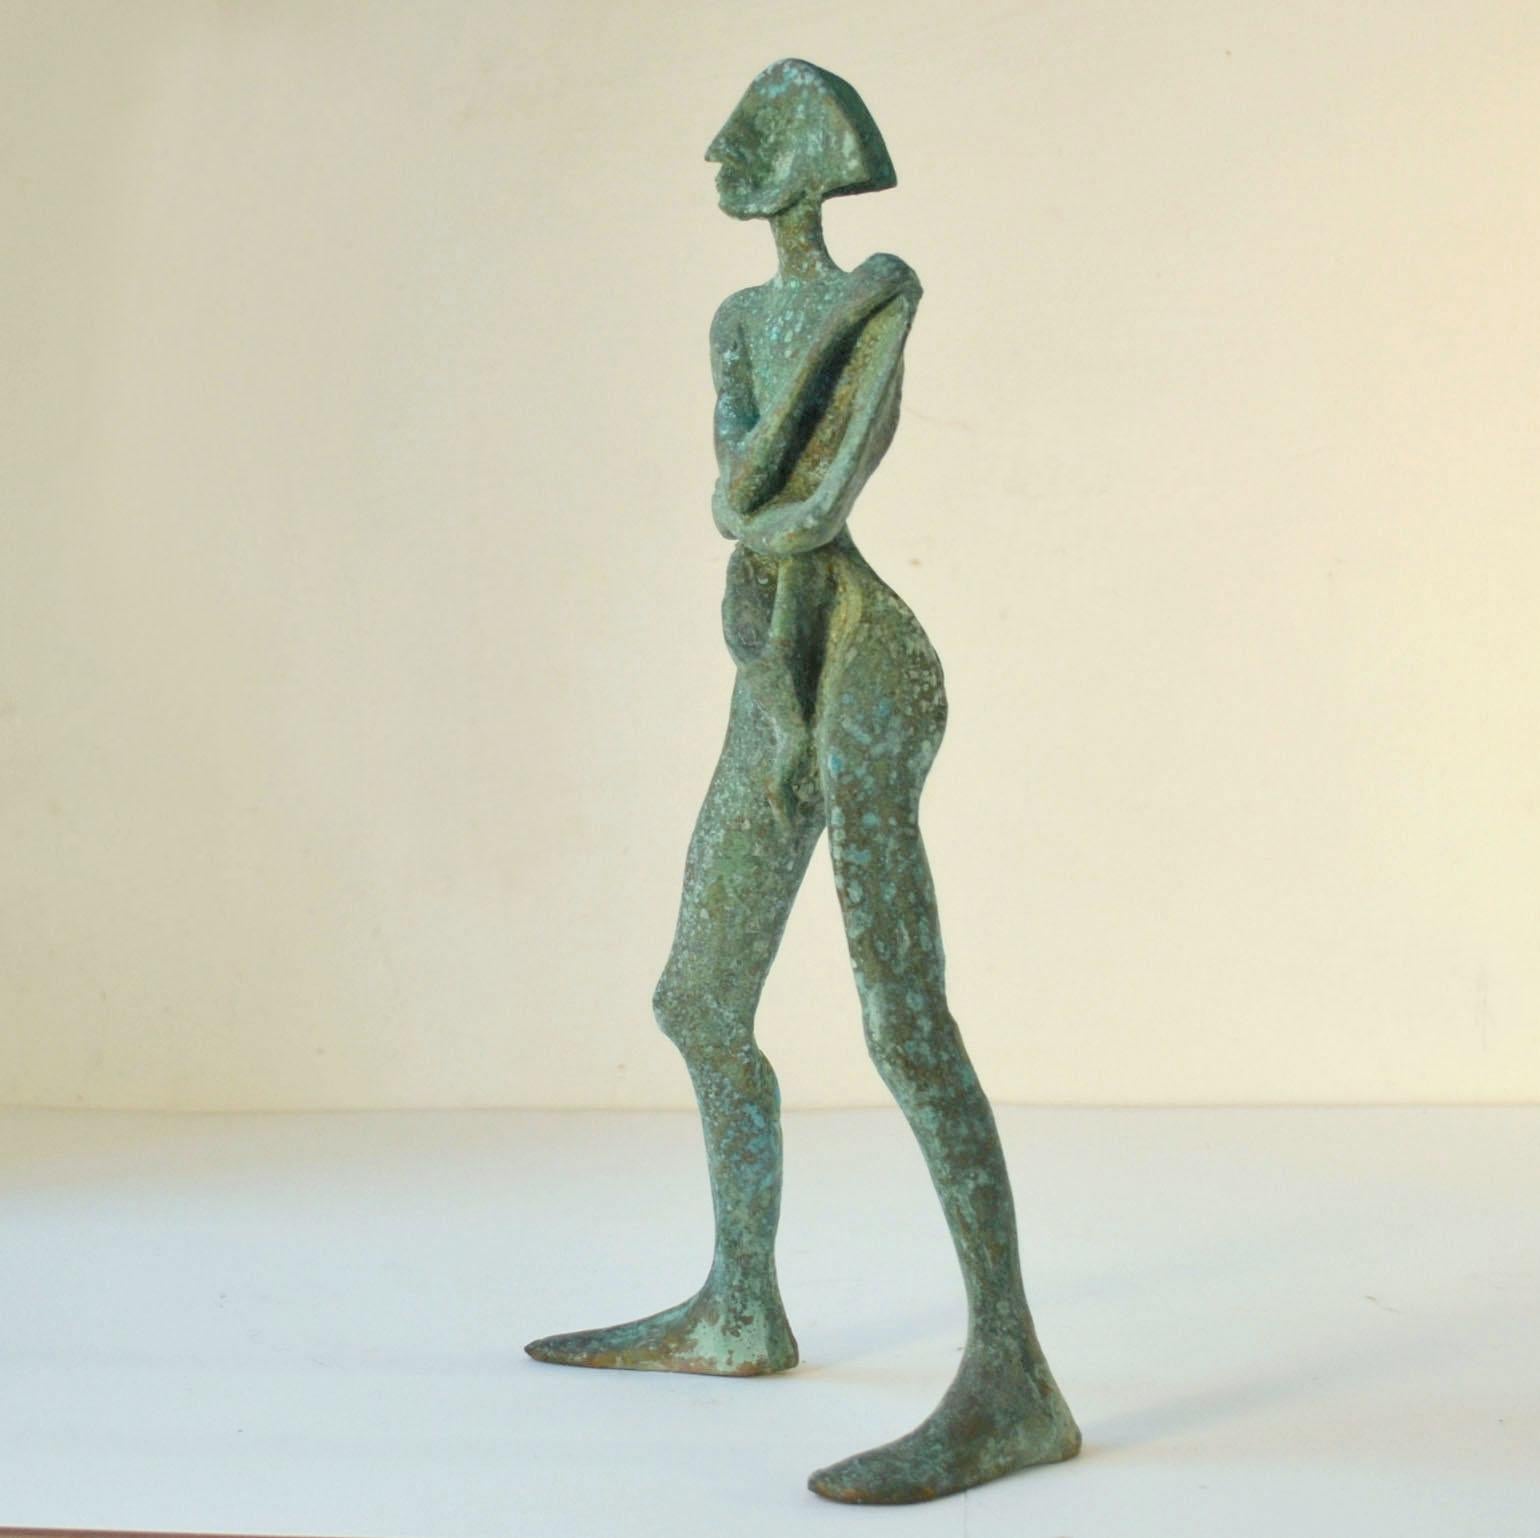 L'homme debout est une sculpture abstraite en bronze intitulée 